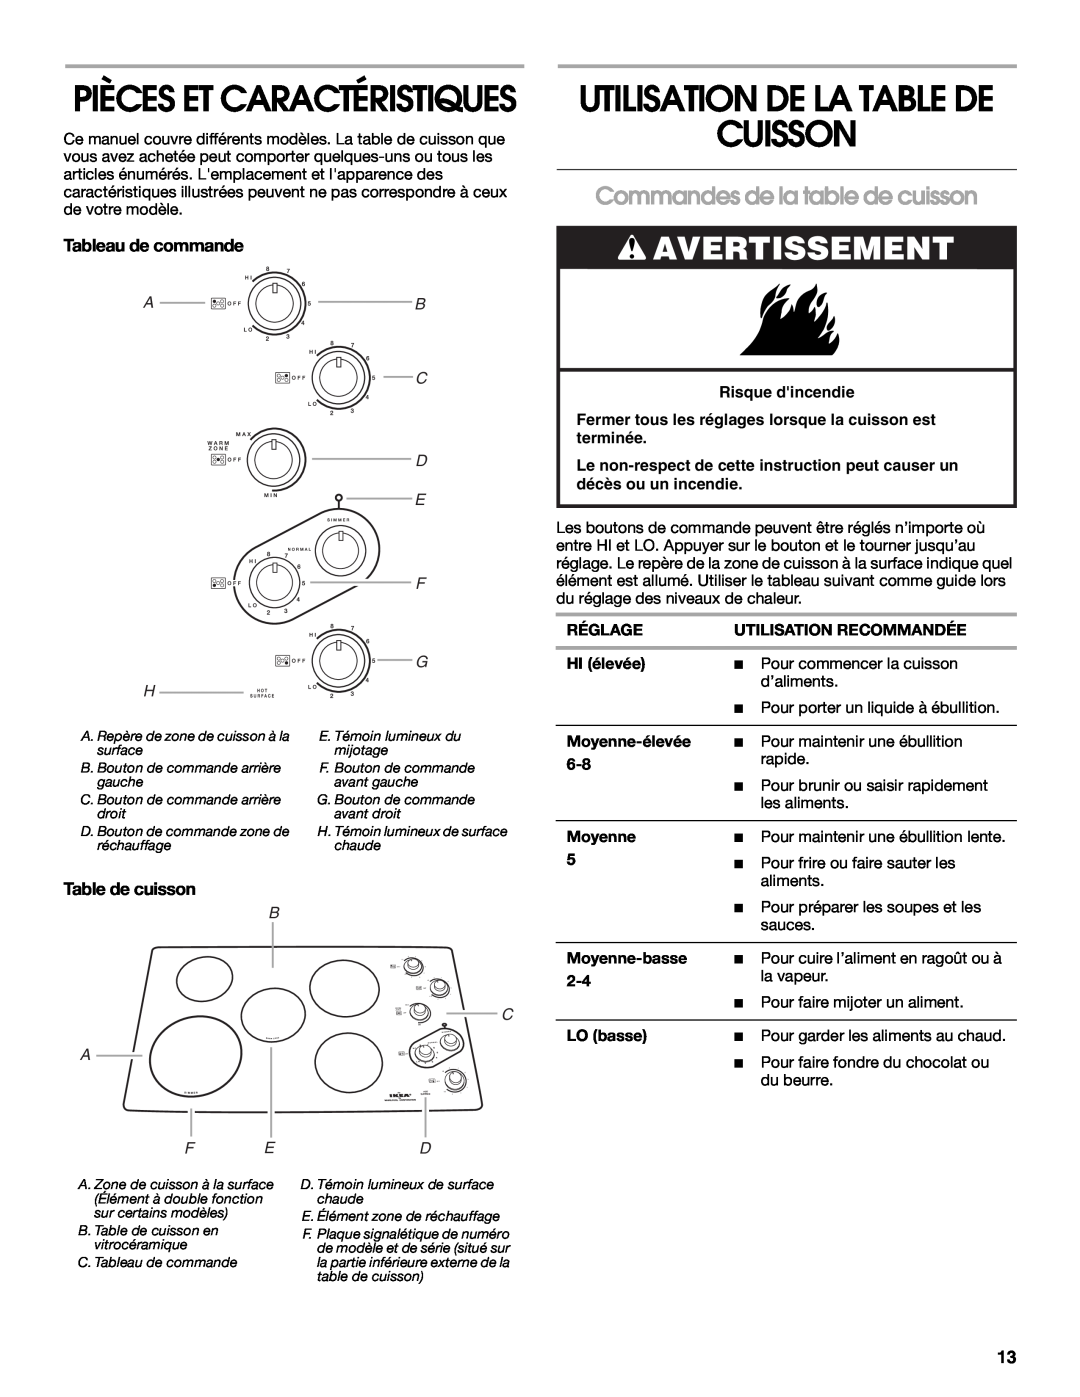 Whirlpool 8286619 manual Cuisson, Avertissement, Commandes de la table de cuisson, Utilisation De La Table De, C D E, A F E 